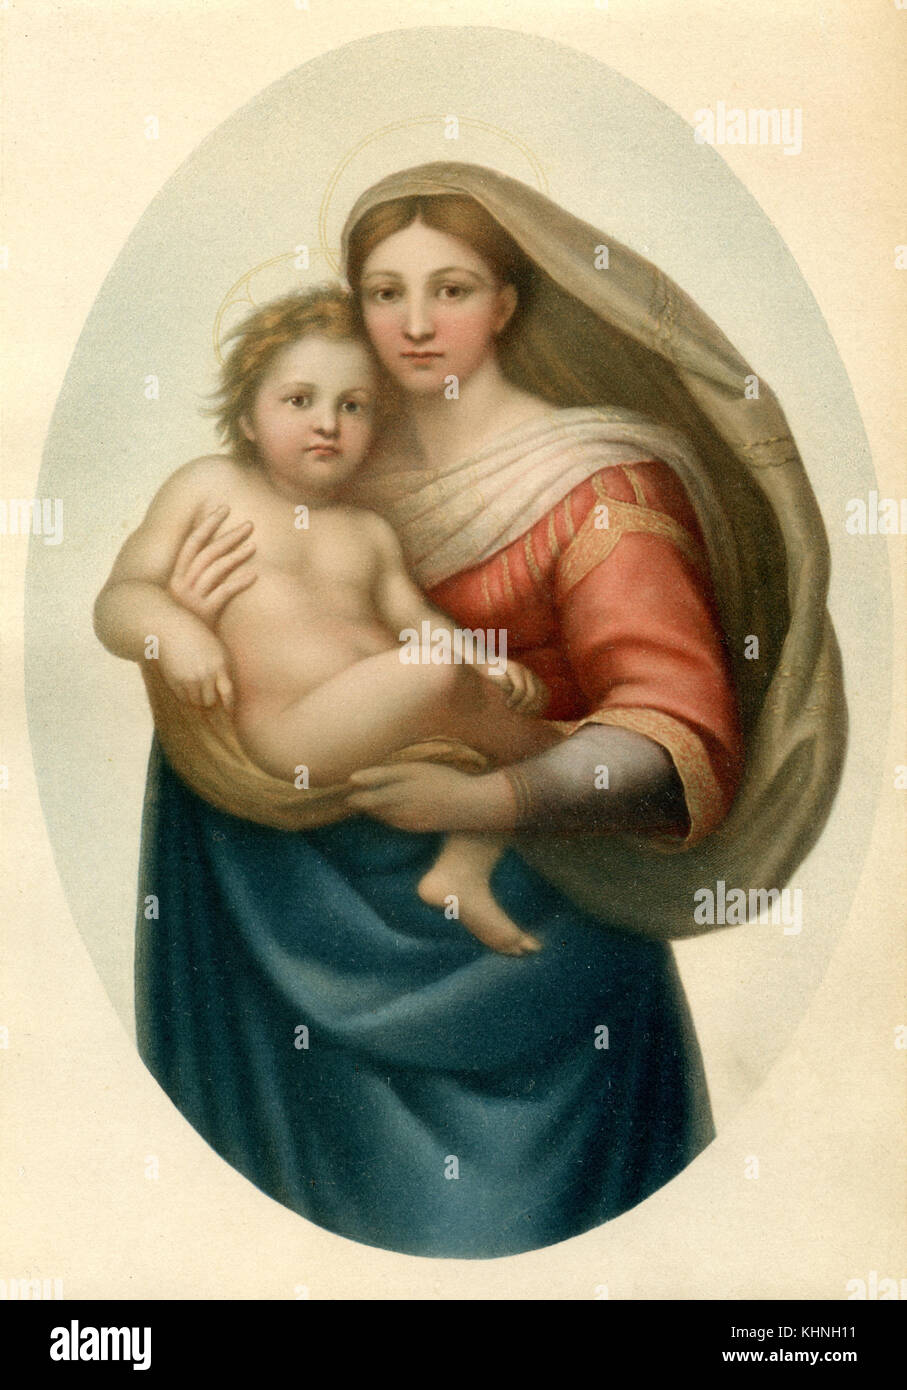 Sistine Madonna by Raphael, detail (Sixtinische Madonna von Raffael, Ausschnitt) Stock Photo